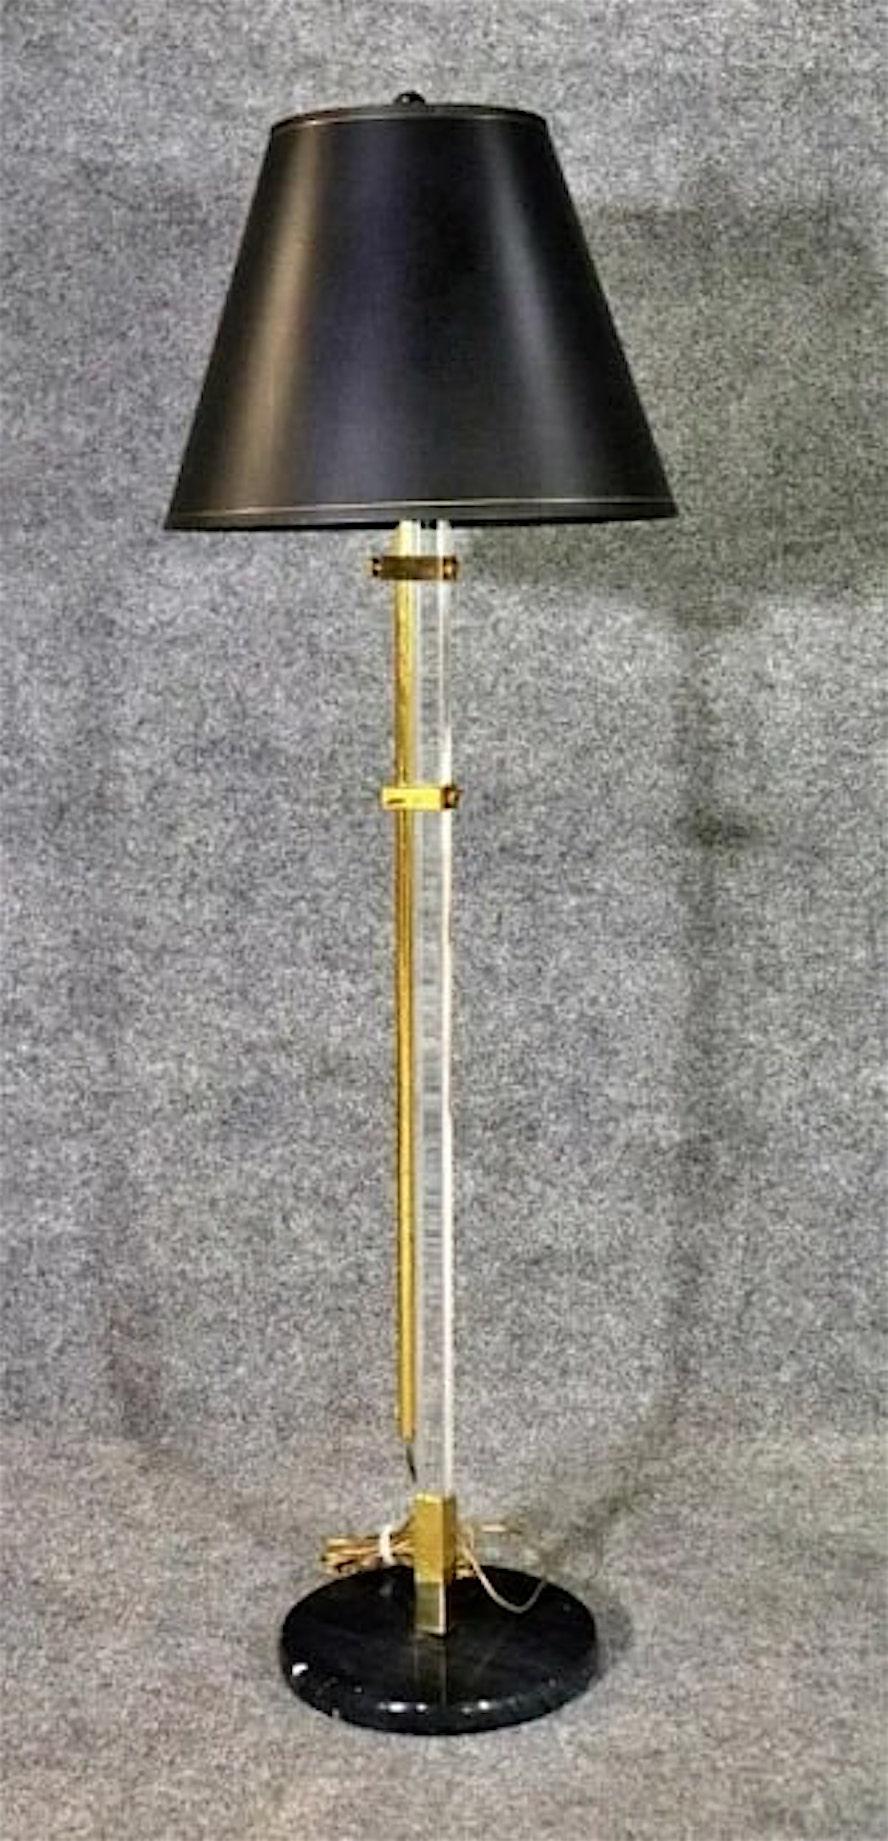 Verstellbare Stehlampe aus poliertem Messing und klarem Lucit, auf einem Sockel aus schwarzem Marmor, mit schwarz-goldenem Schirm.
Sockel: 10